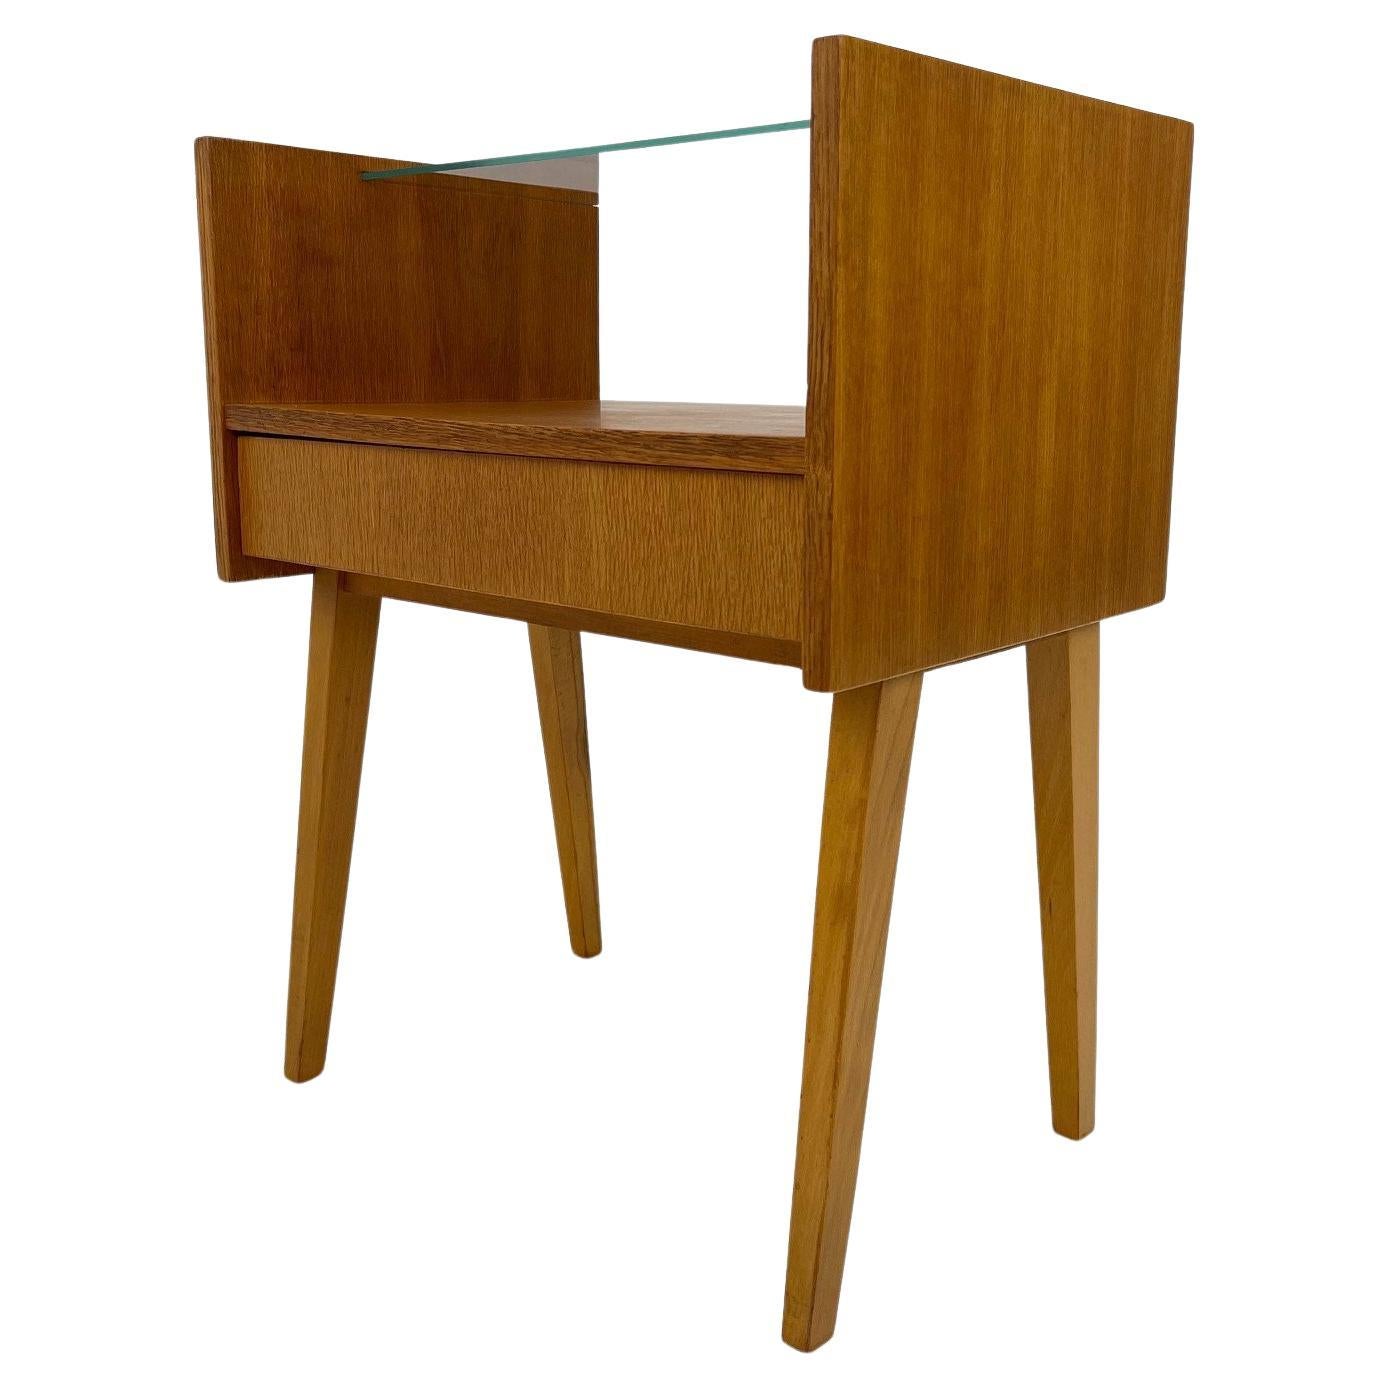 1960's Side Table or Nightstand by Arch. František Jirák For Sale